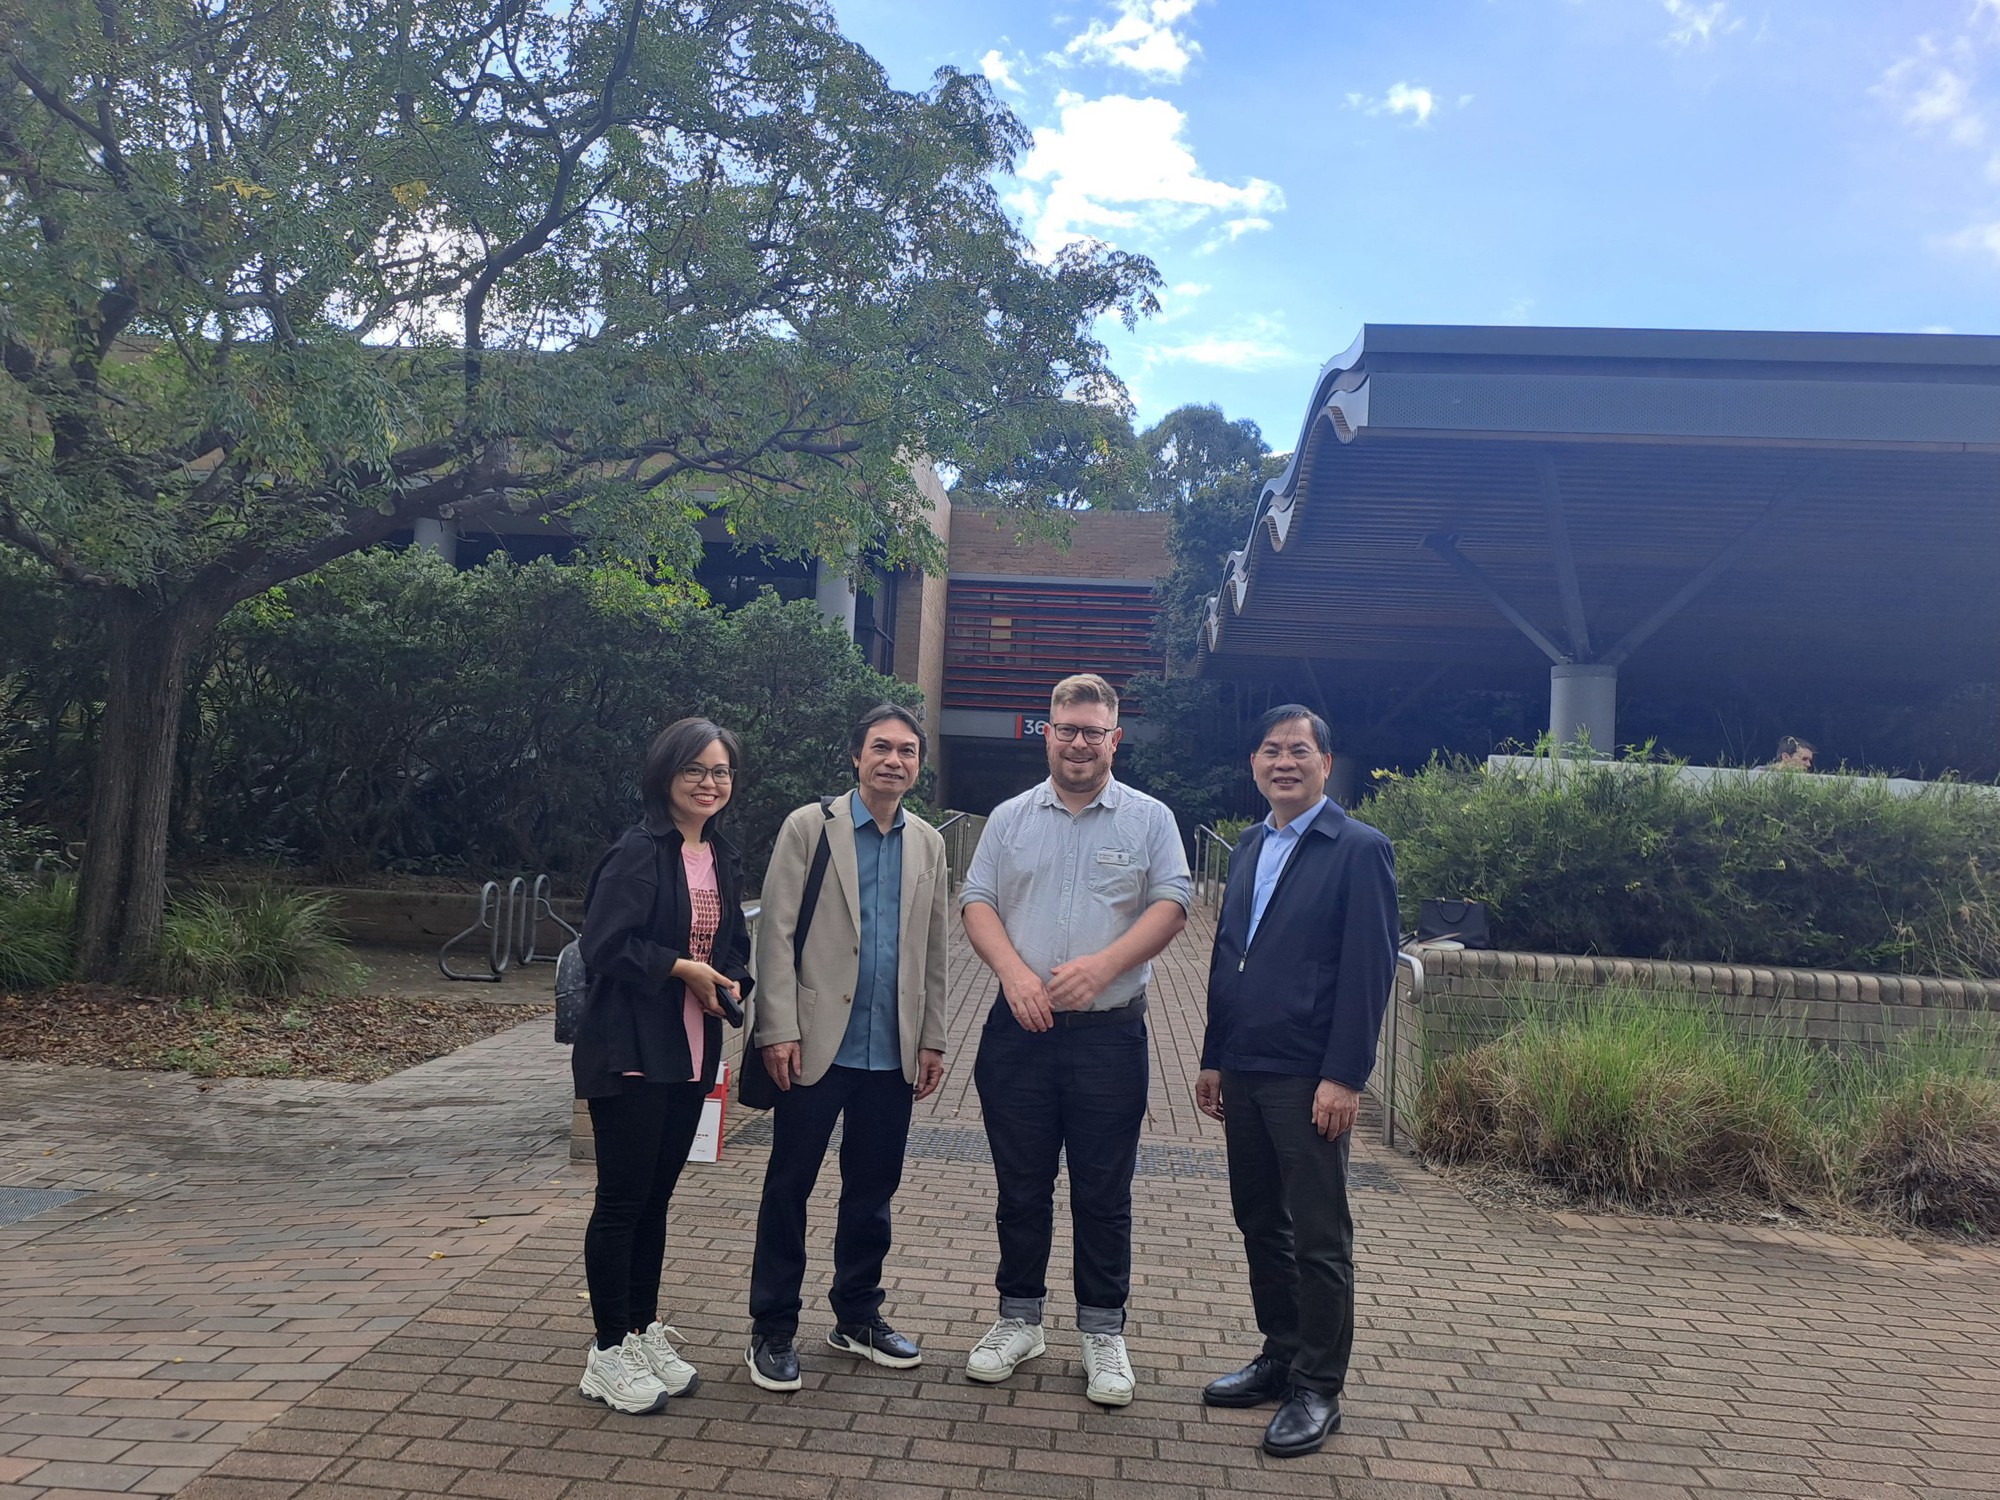 Hoạt động đào tạo và hợp tác quốc tế của Trường Đại học Sân khấu – Điện ảnh Hà Nội với các trường đại học tại Australia - Ảnh 10.